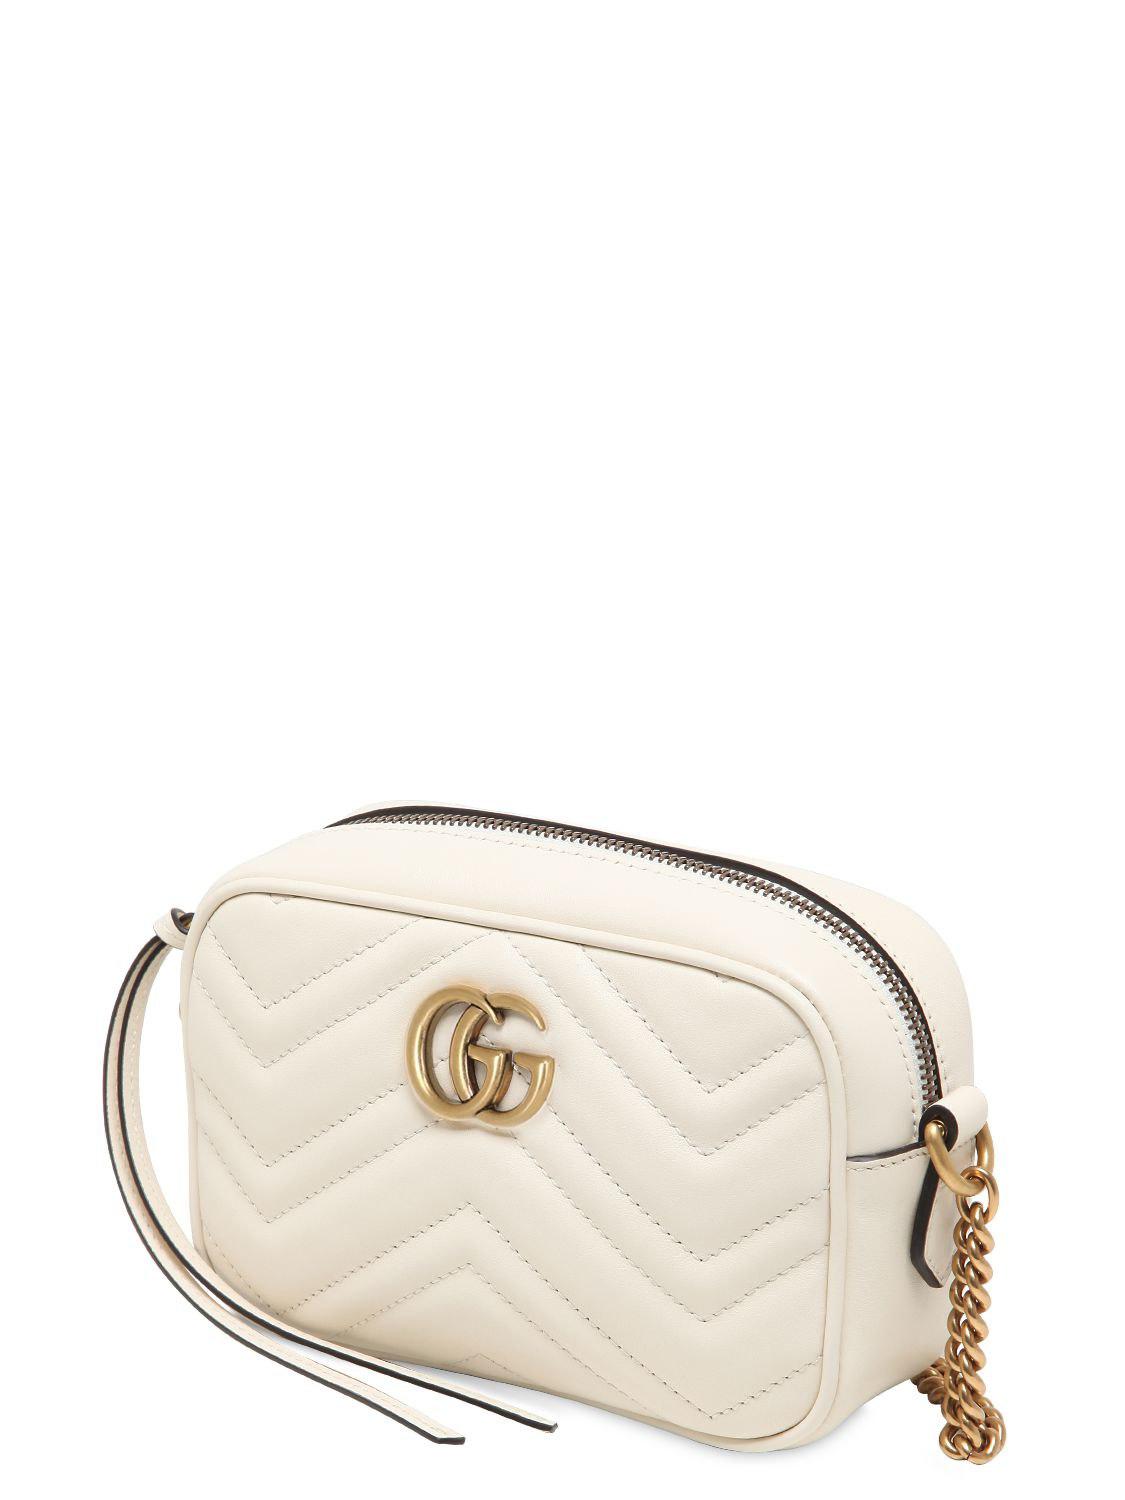 Gucci Mini Gg Marmont 2.0 Leather Camera Bag in White